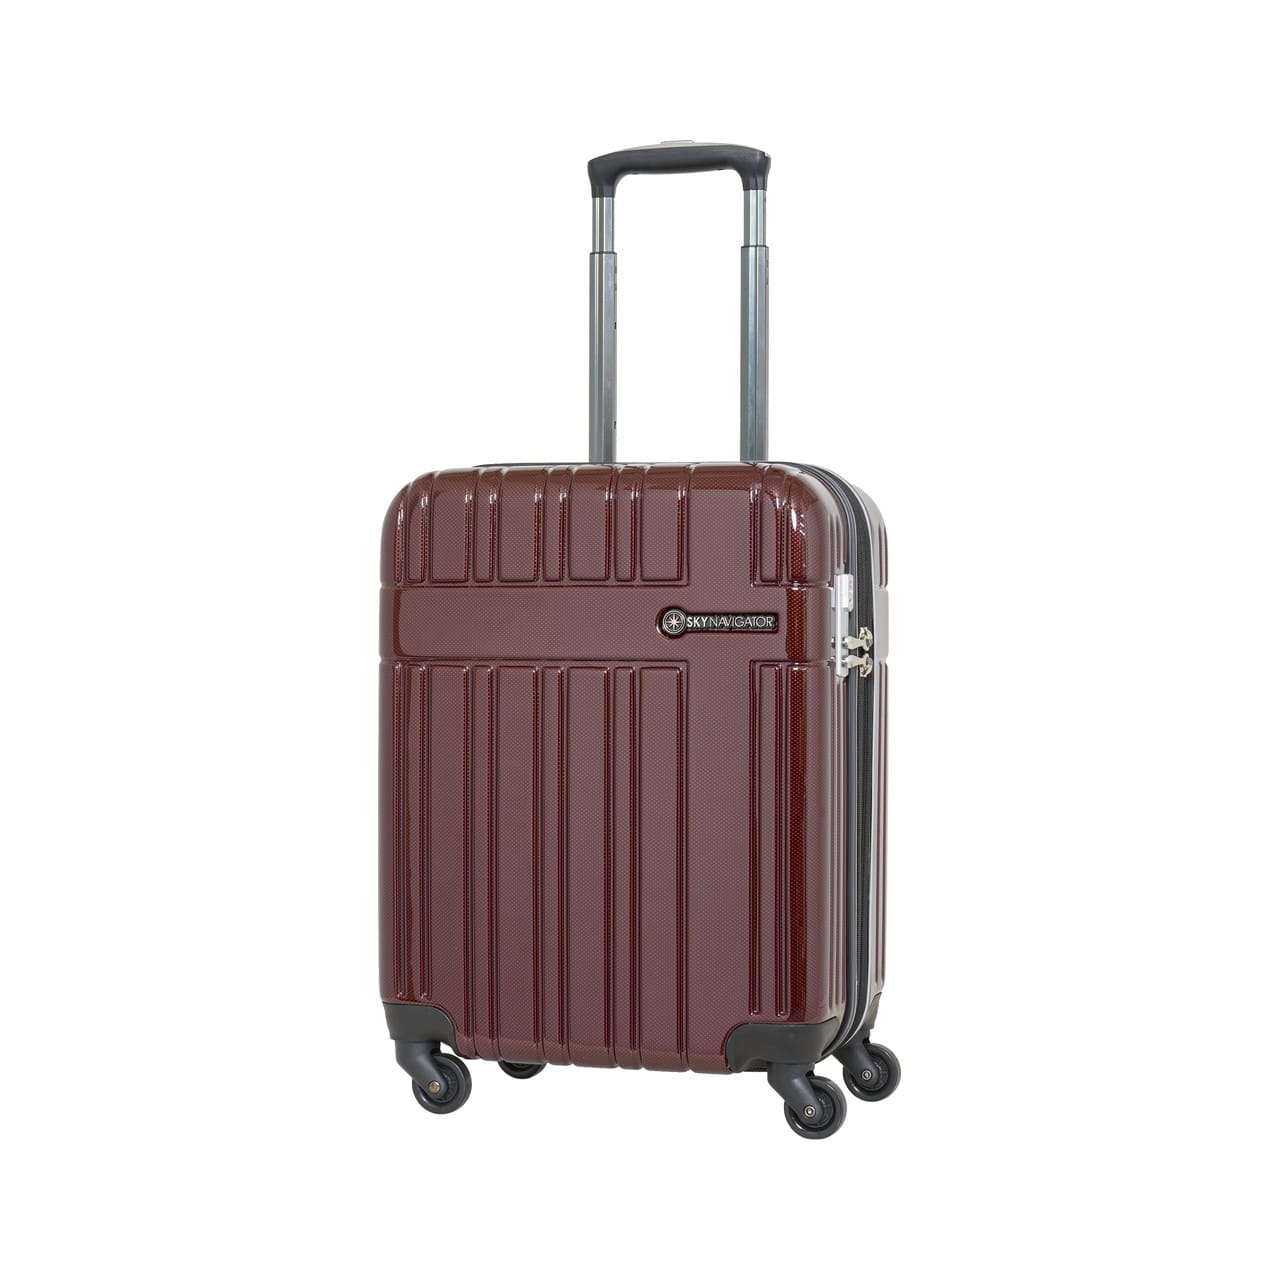 SKYNAVIGATORのスーツケースSK-0835-48のワインカーボンの正面振り画像